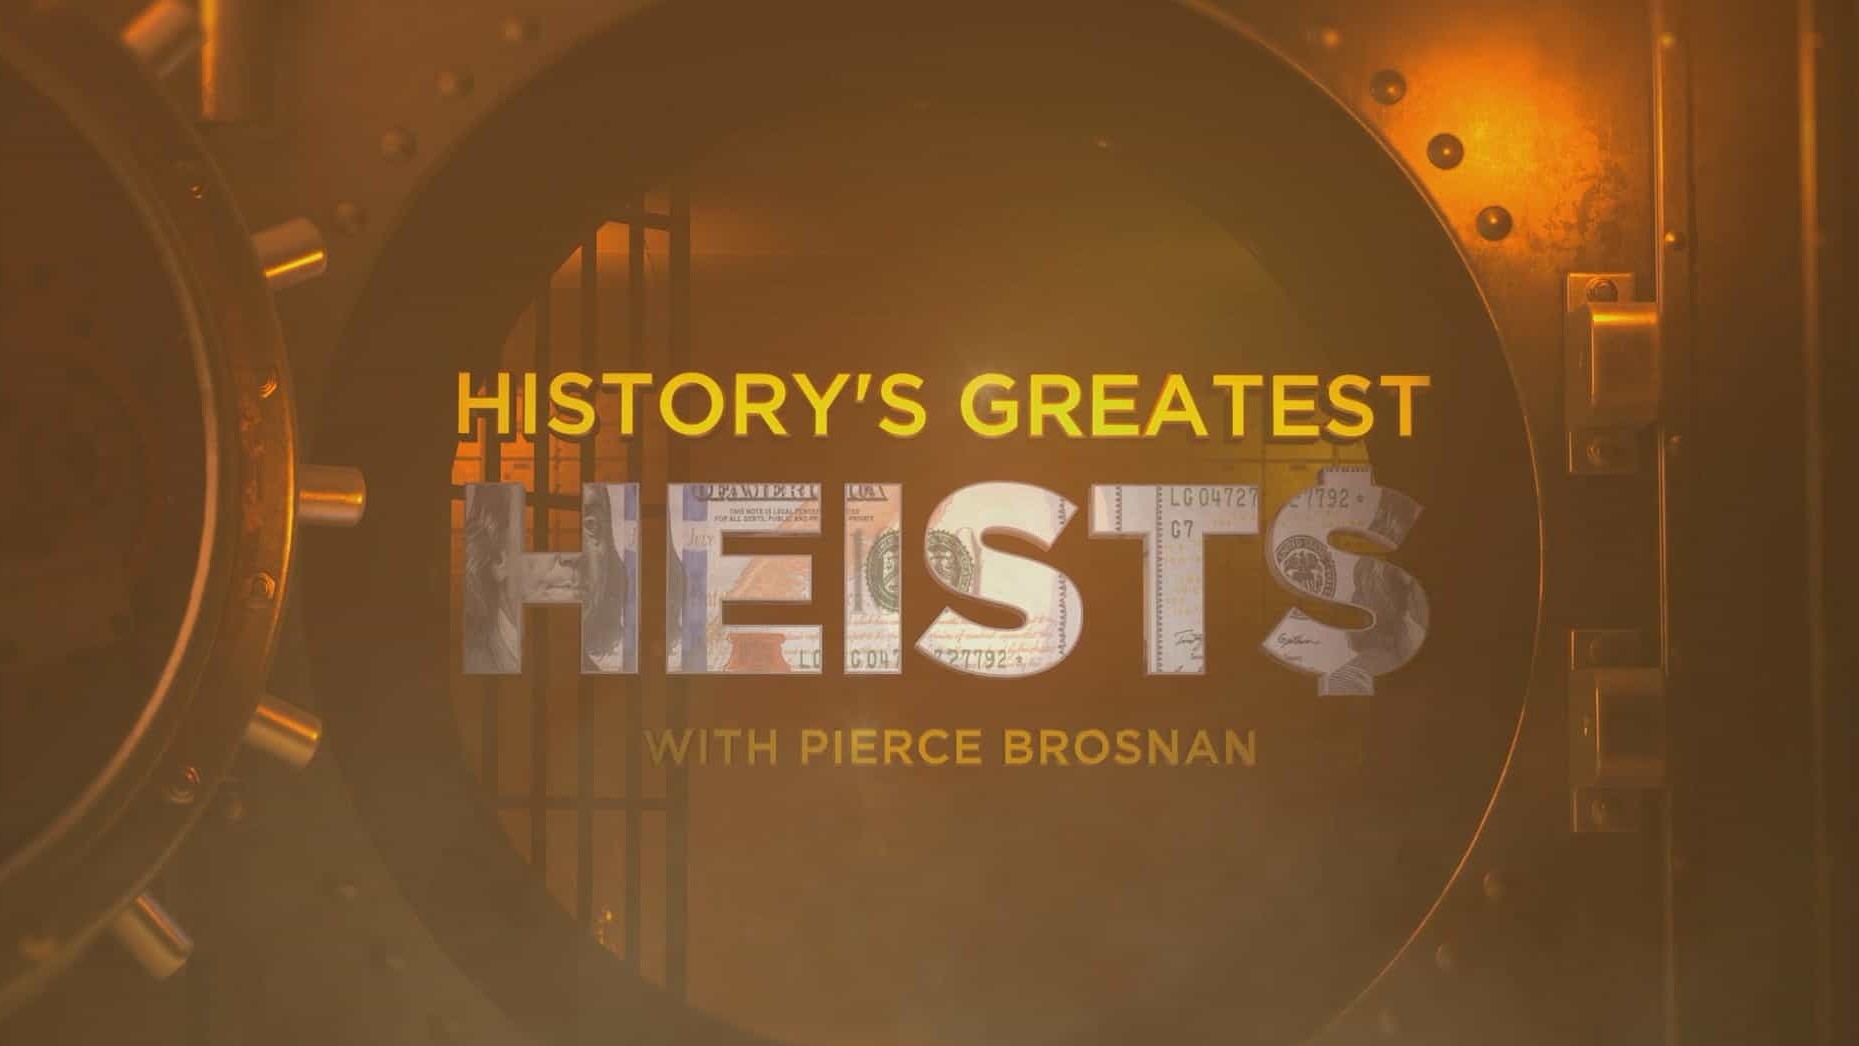 历史频道《历史最伟大的抢劫案/皮尔斯·布鲁斯南（Pierce Brosnan）的历史最伟大的抢劫案 History